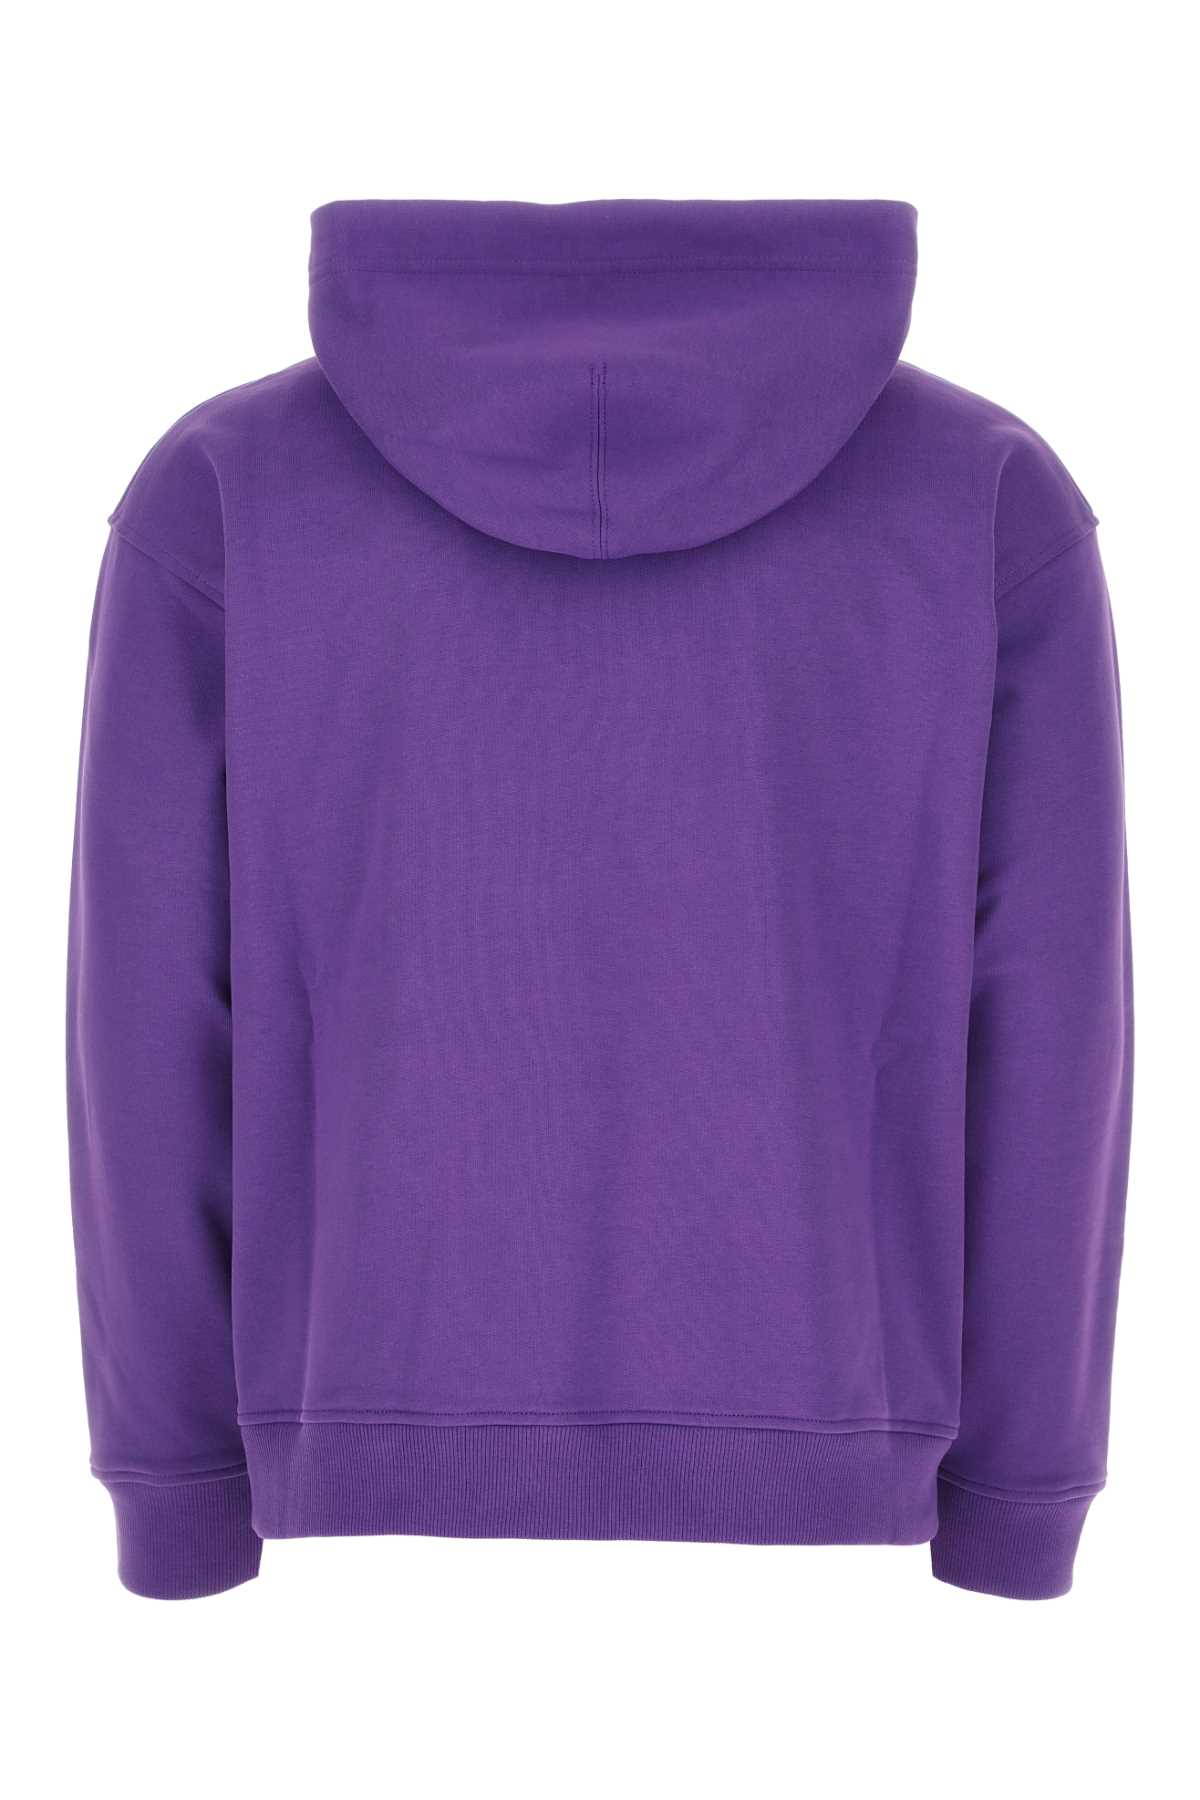 Valentino Purple Cotton Sweatshirt In U15